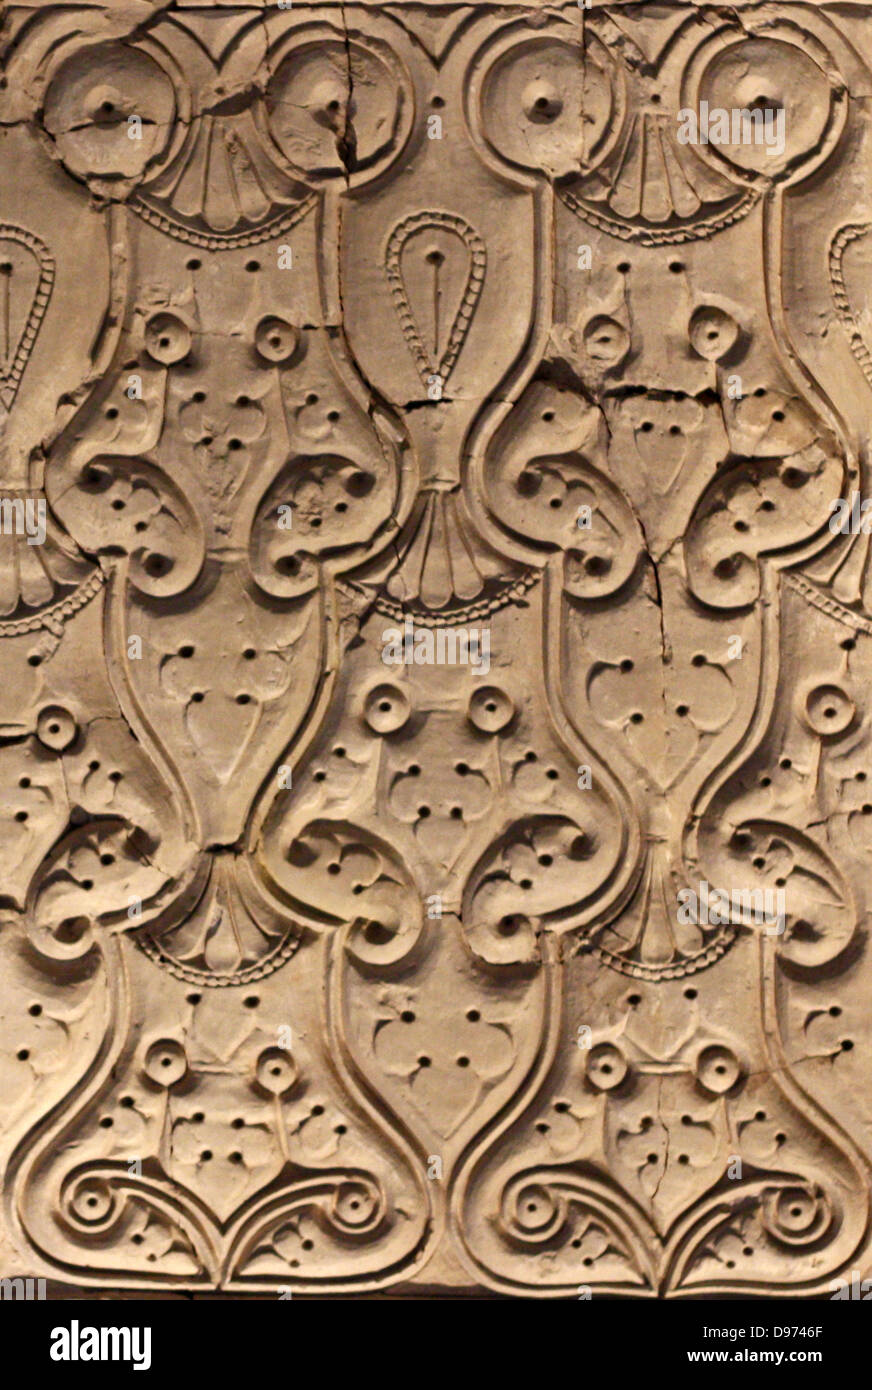 Papel de pared de estuco: interiores de casas y palacios. Samarra es  especialmente famoso por su estuco esculpido, con una vez decoró el dadoes  de casas y palacios. Hay tres estilos diferentes.